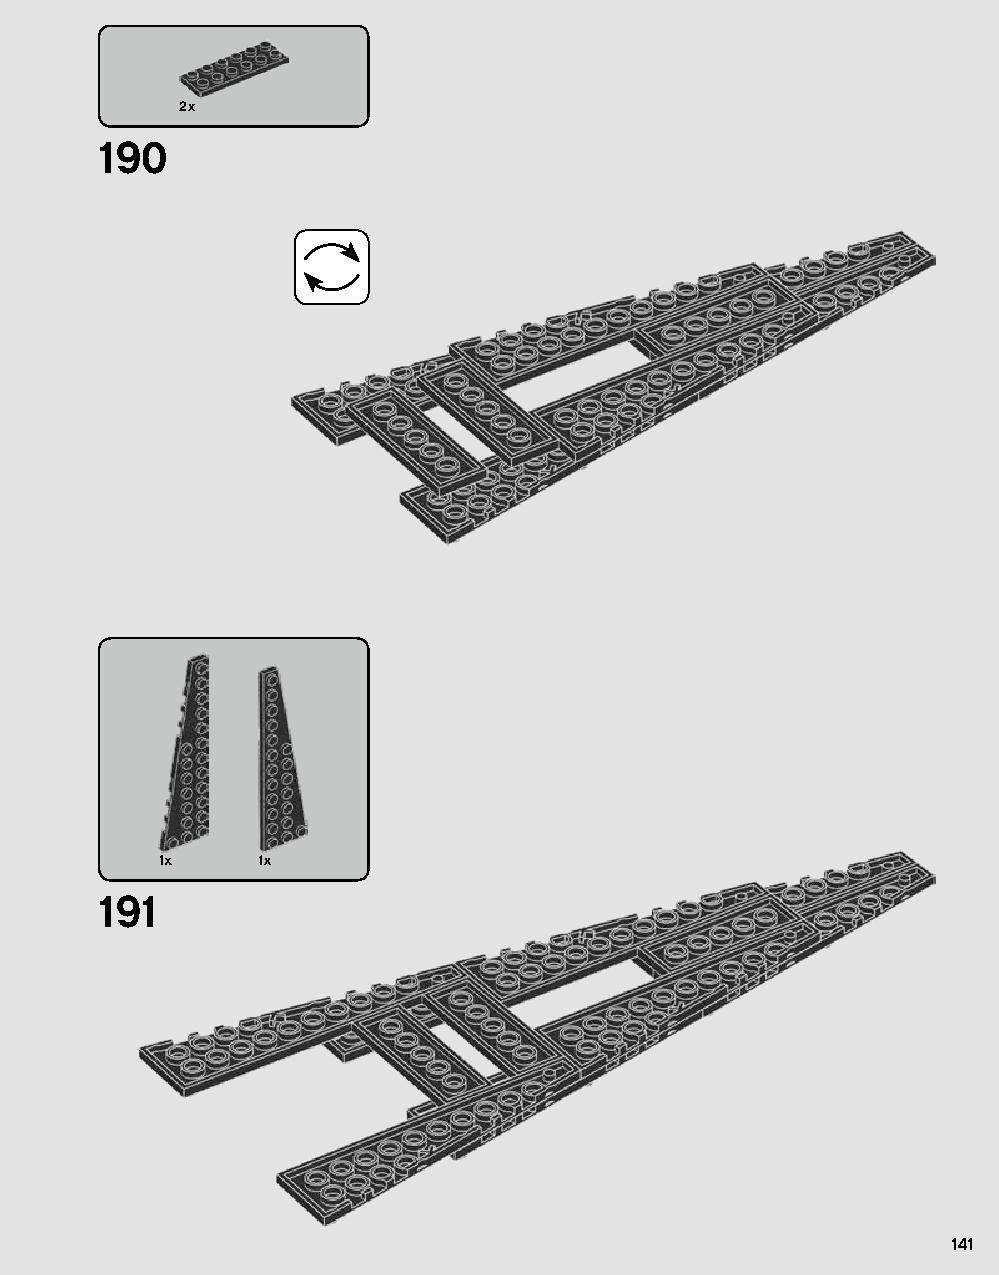 스타워즈 다스베이더 캐슬 75251 레고 세트 제품정보 레고 조립설명서 141 page